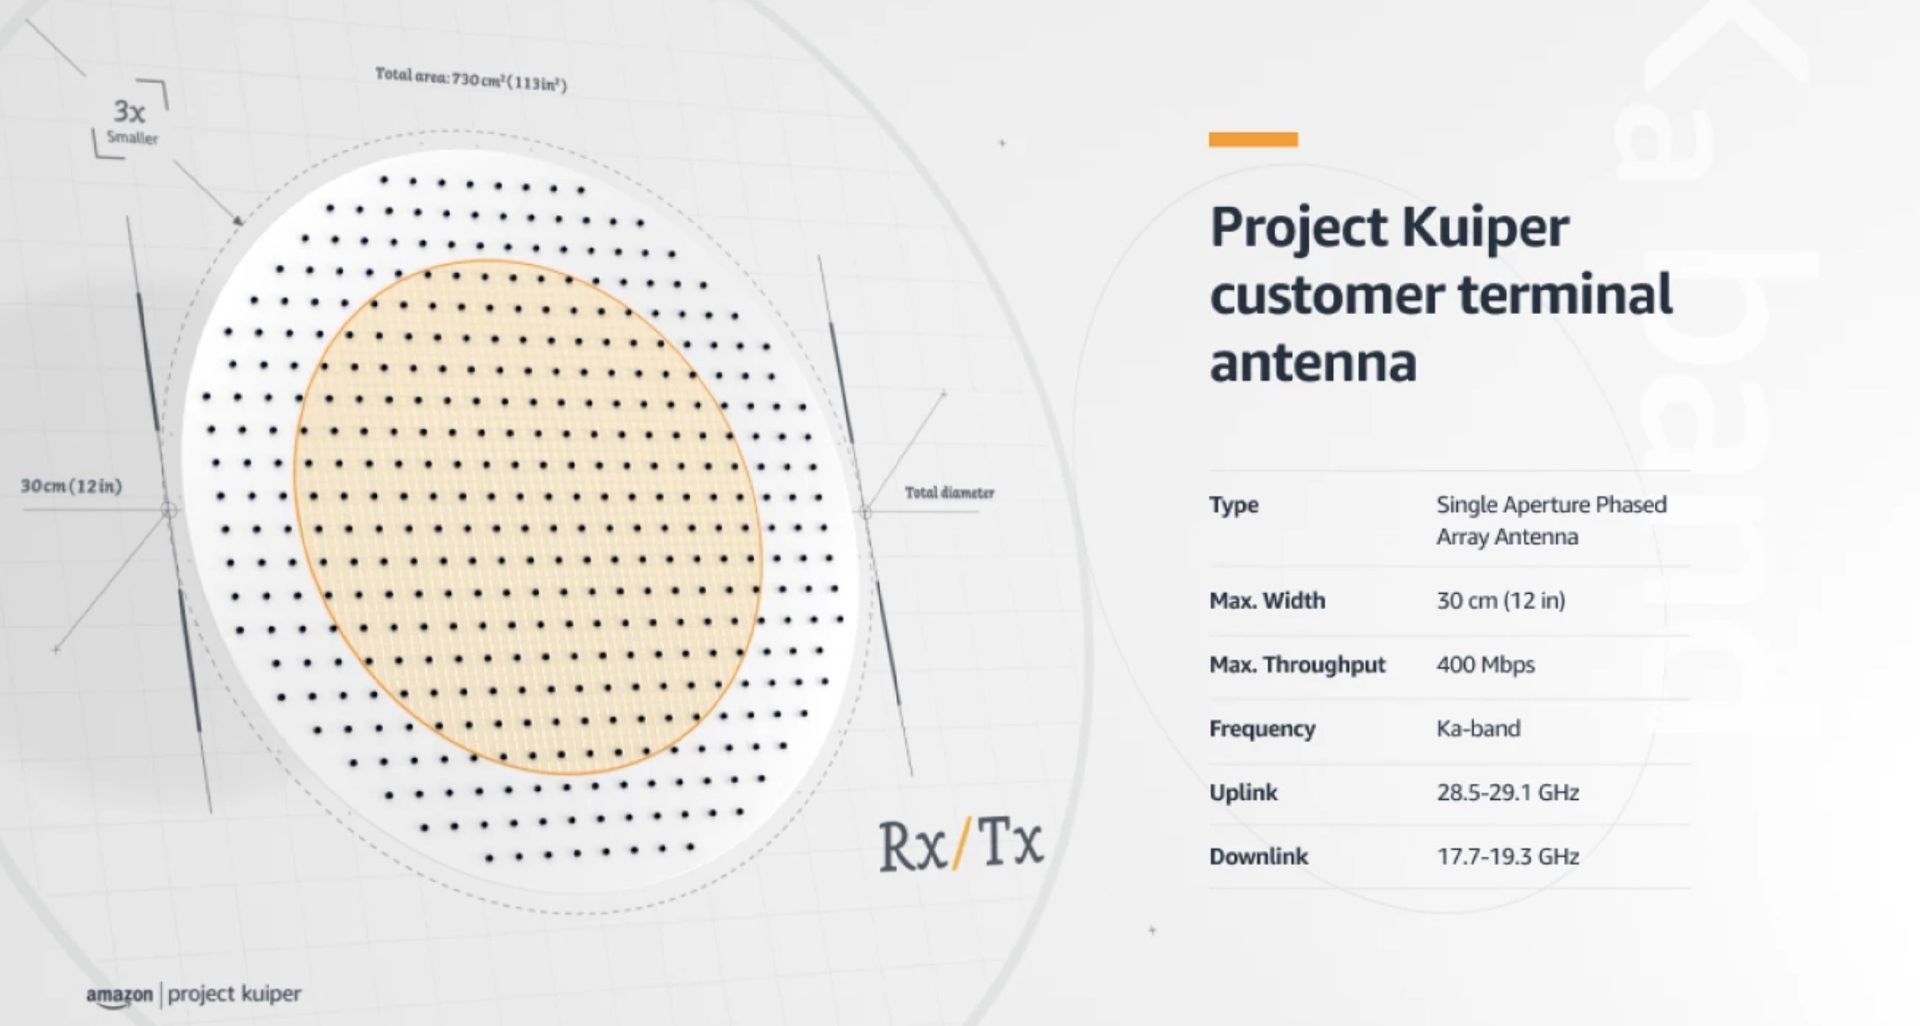 مرجع متخصصين ايران جزئيات و مشخصات ديش پايانه زميني پروژه كويپر / Project Kuiper آمازون